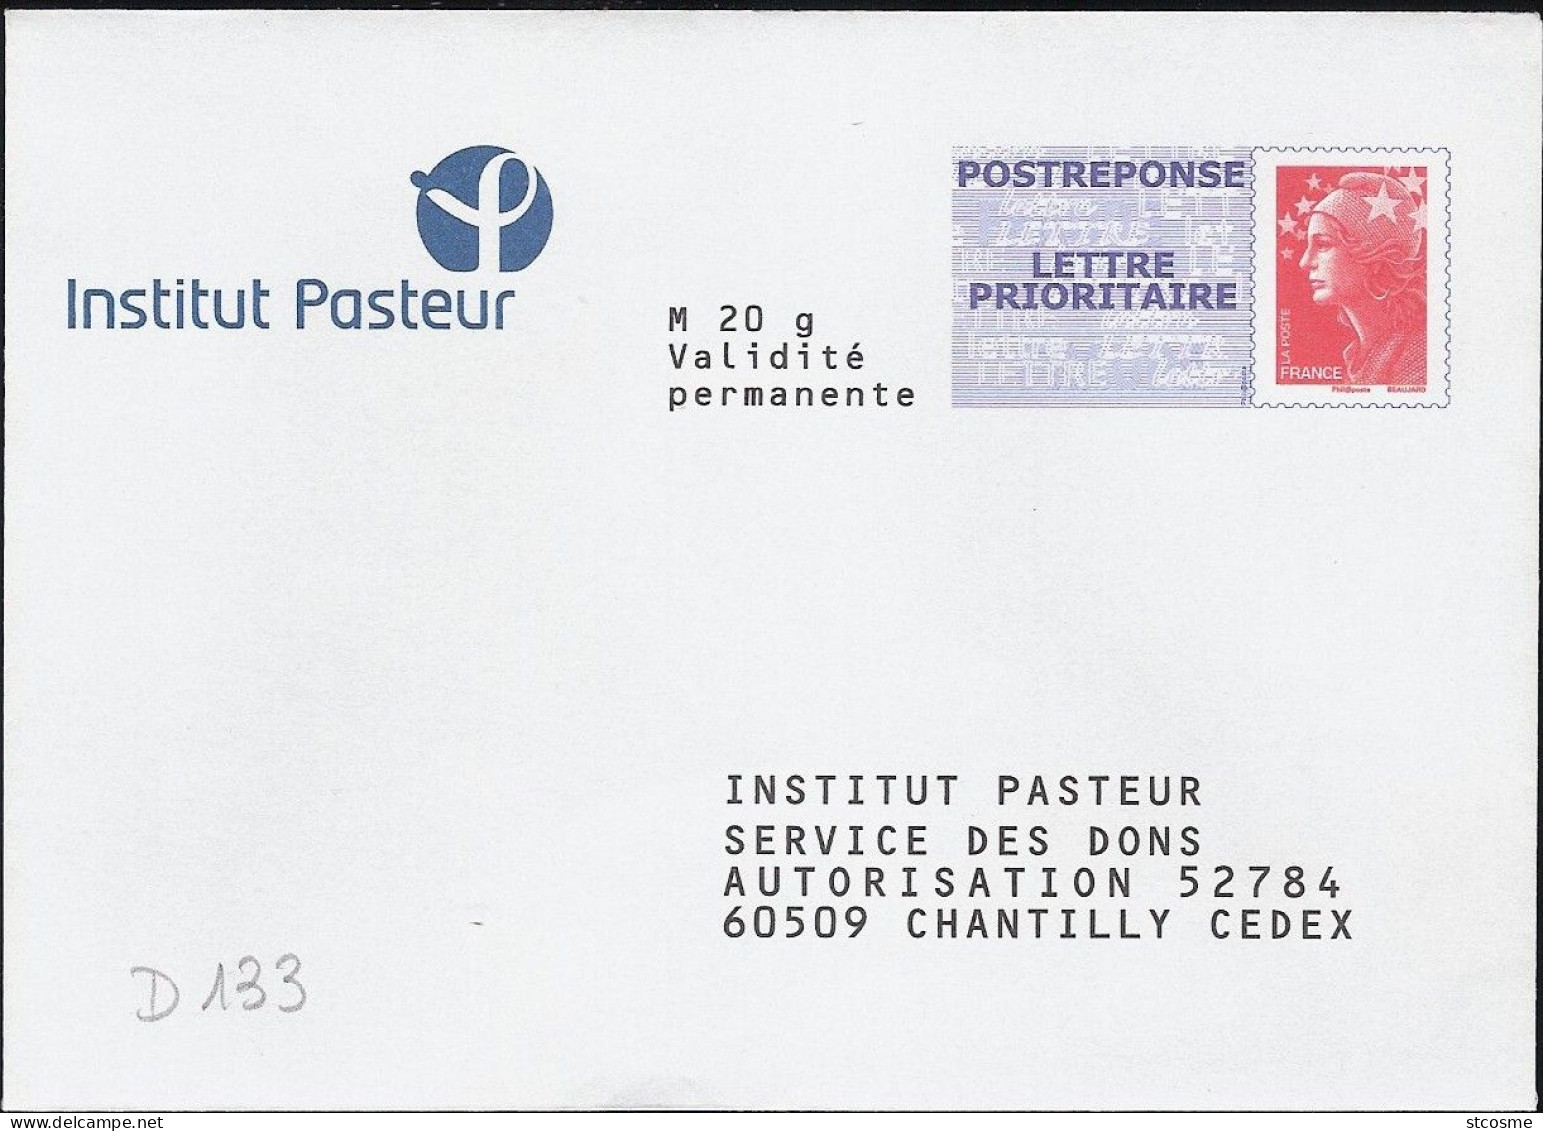 D0133-B - Entier / Stationery / PSE - PAP Réponse Beaujard - Institut Pasteur - Agrément 10P497 - Listos Para Enviar: Respuesta /Beaujard